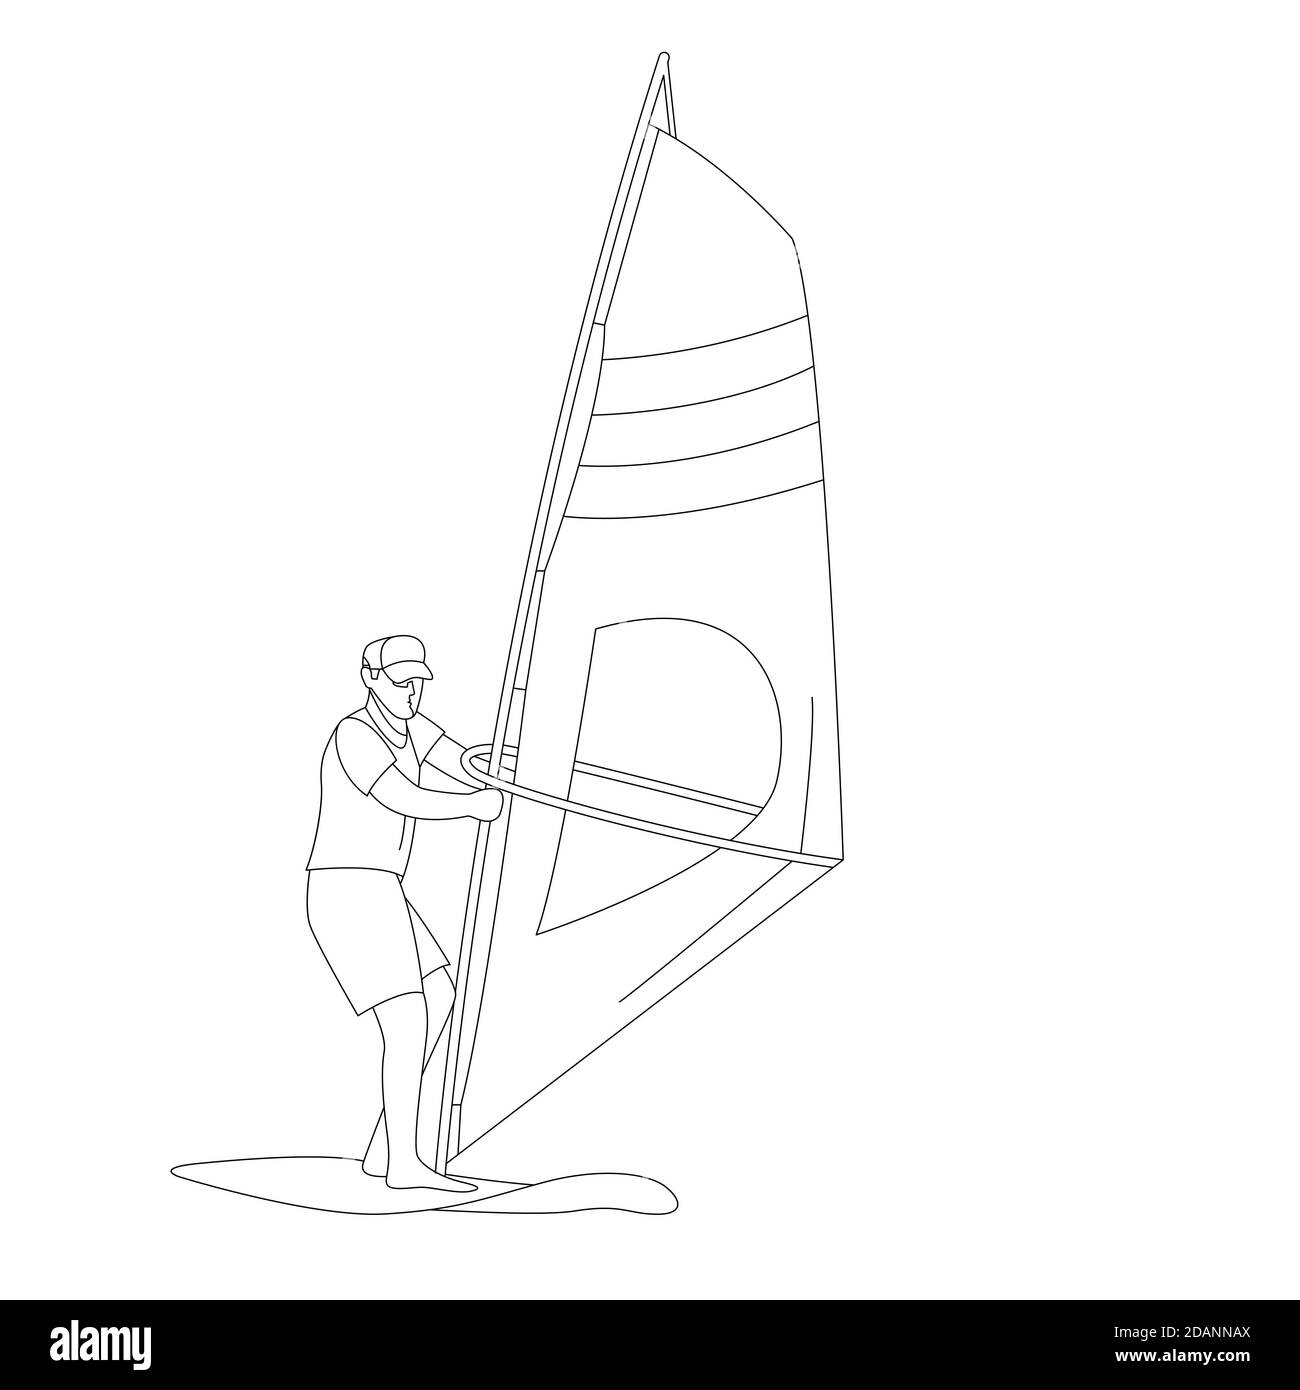 windsurf, illustrazione vettoriale, disegno di rivestimento, vista frontale Foto Stock